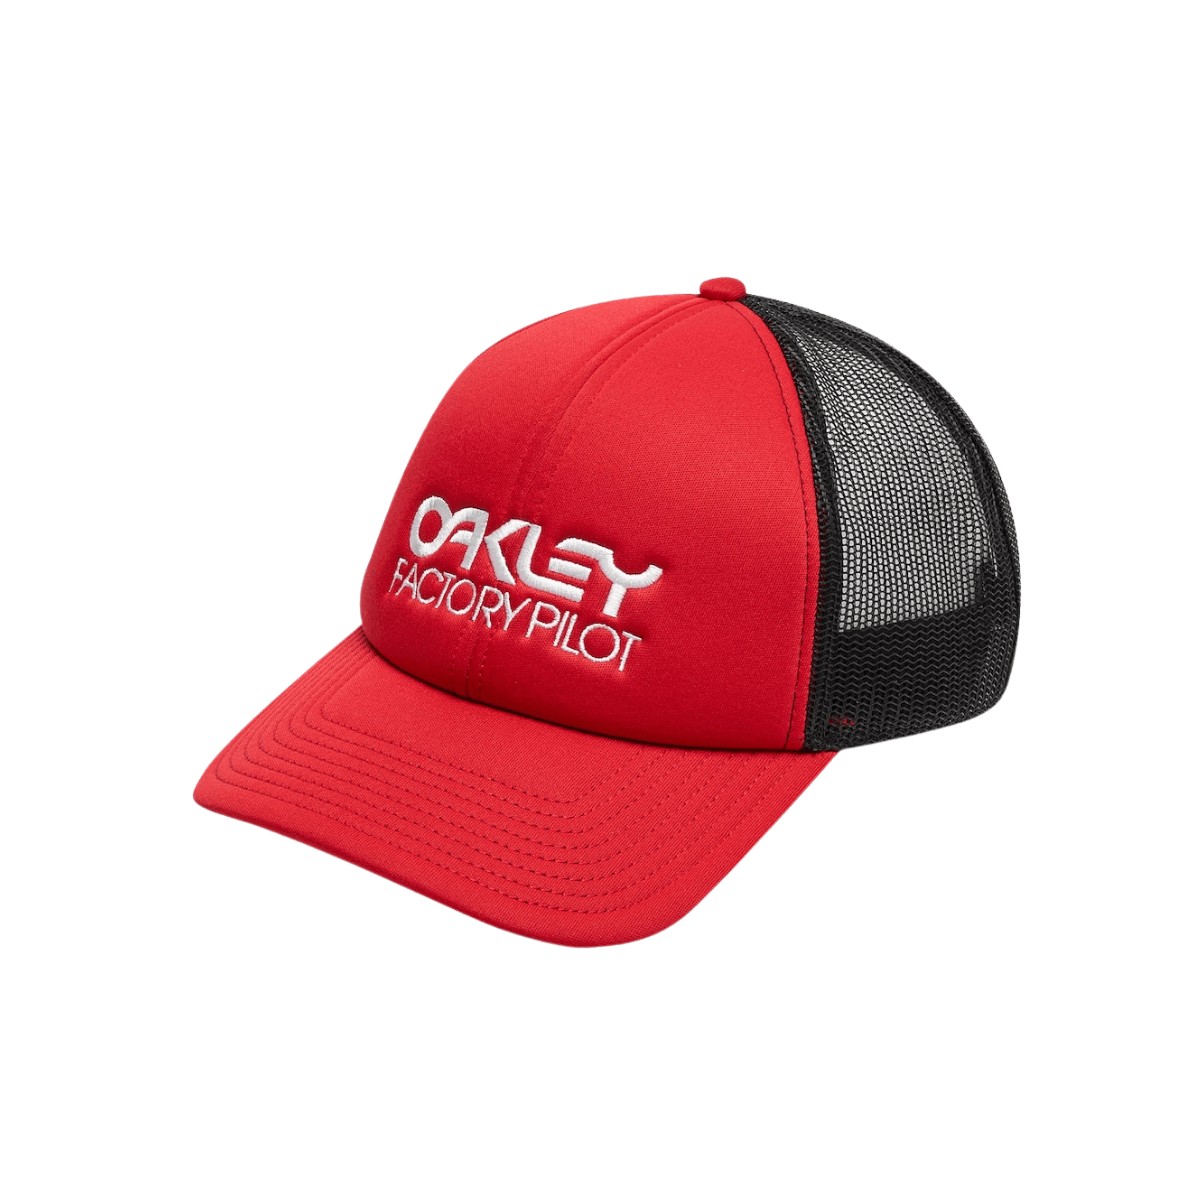 Oakley Factory Pilot Trucker Hat Rote Kappe